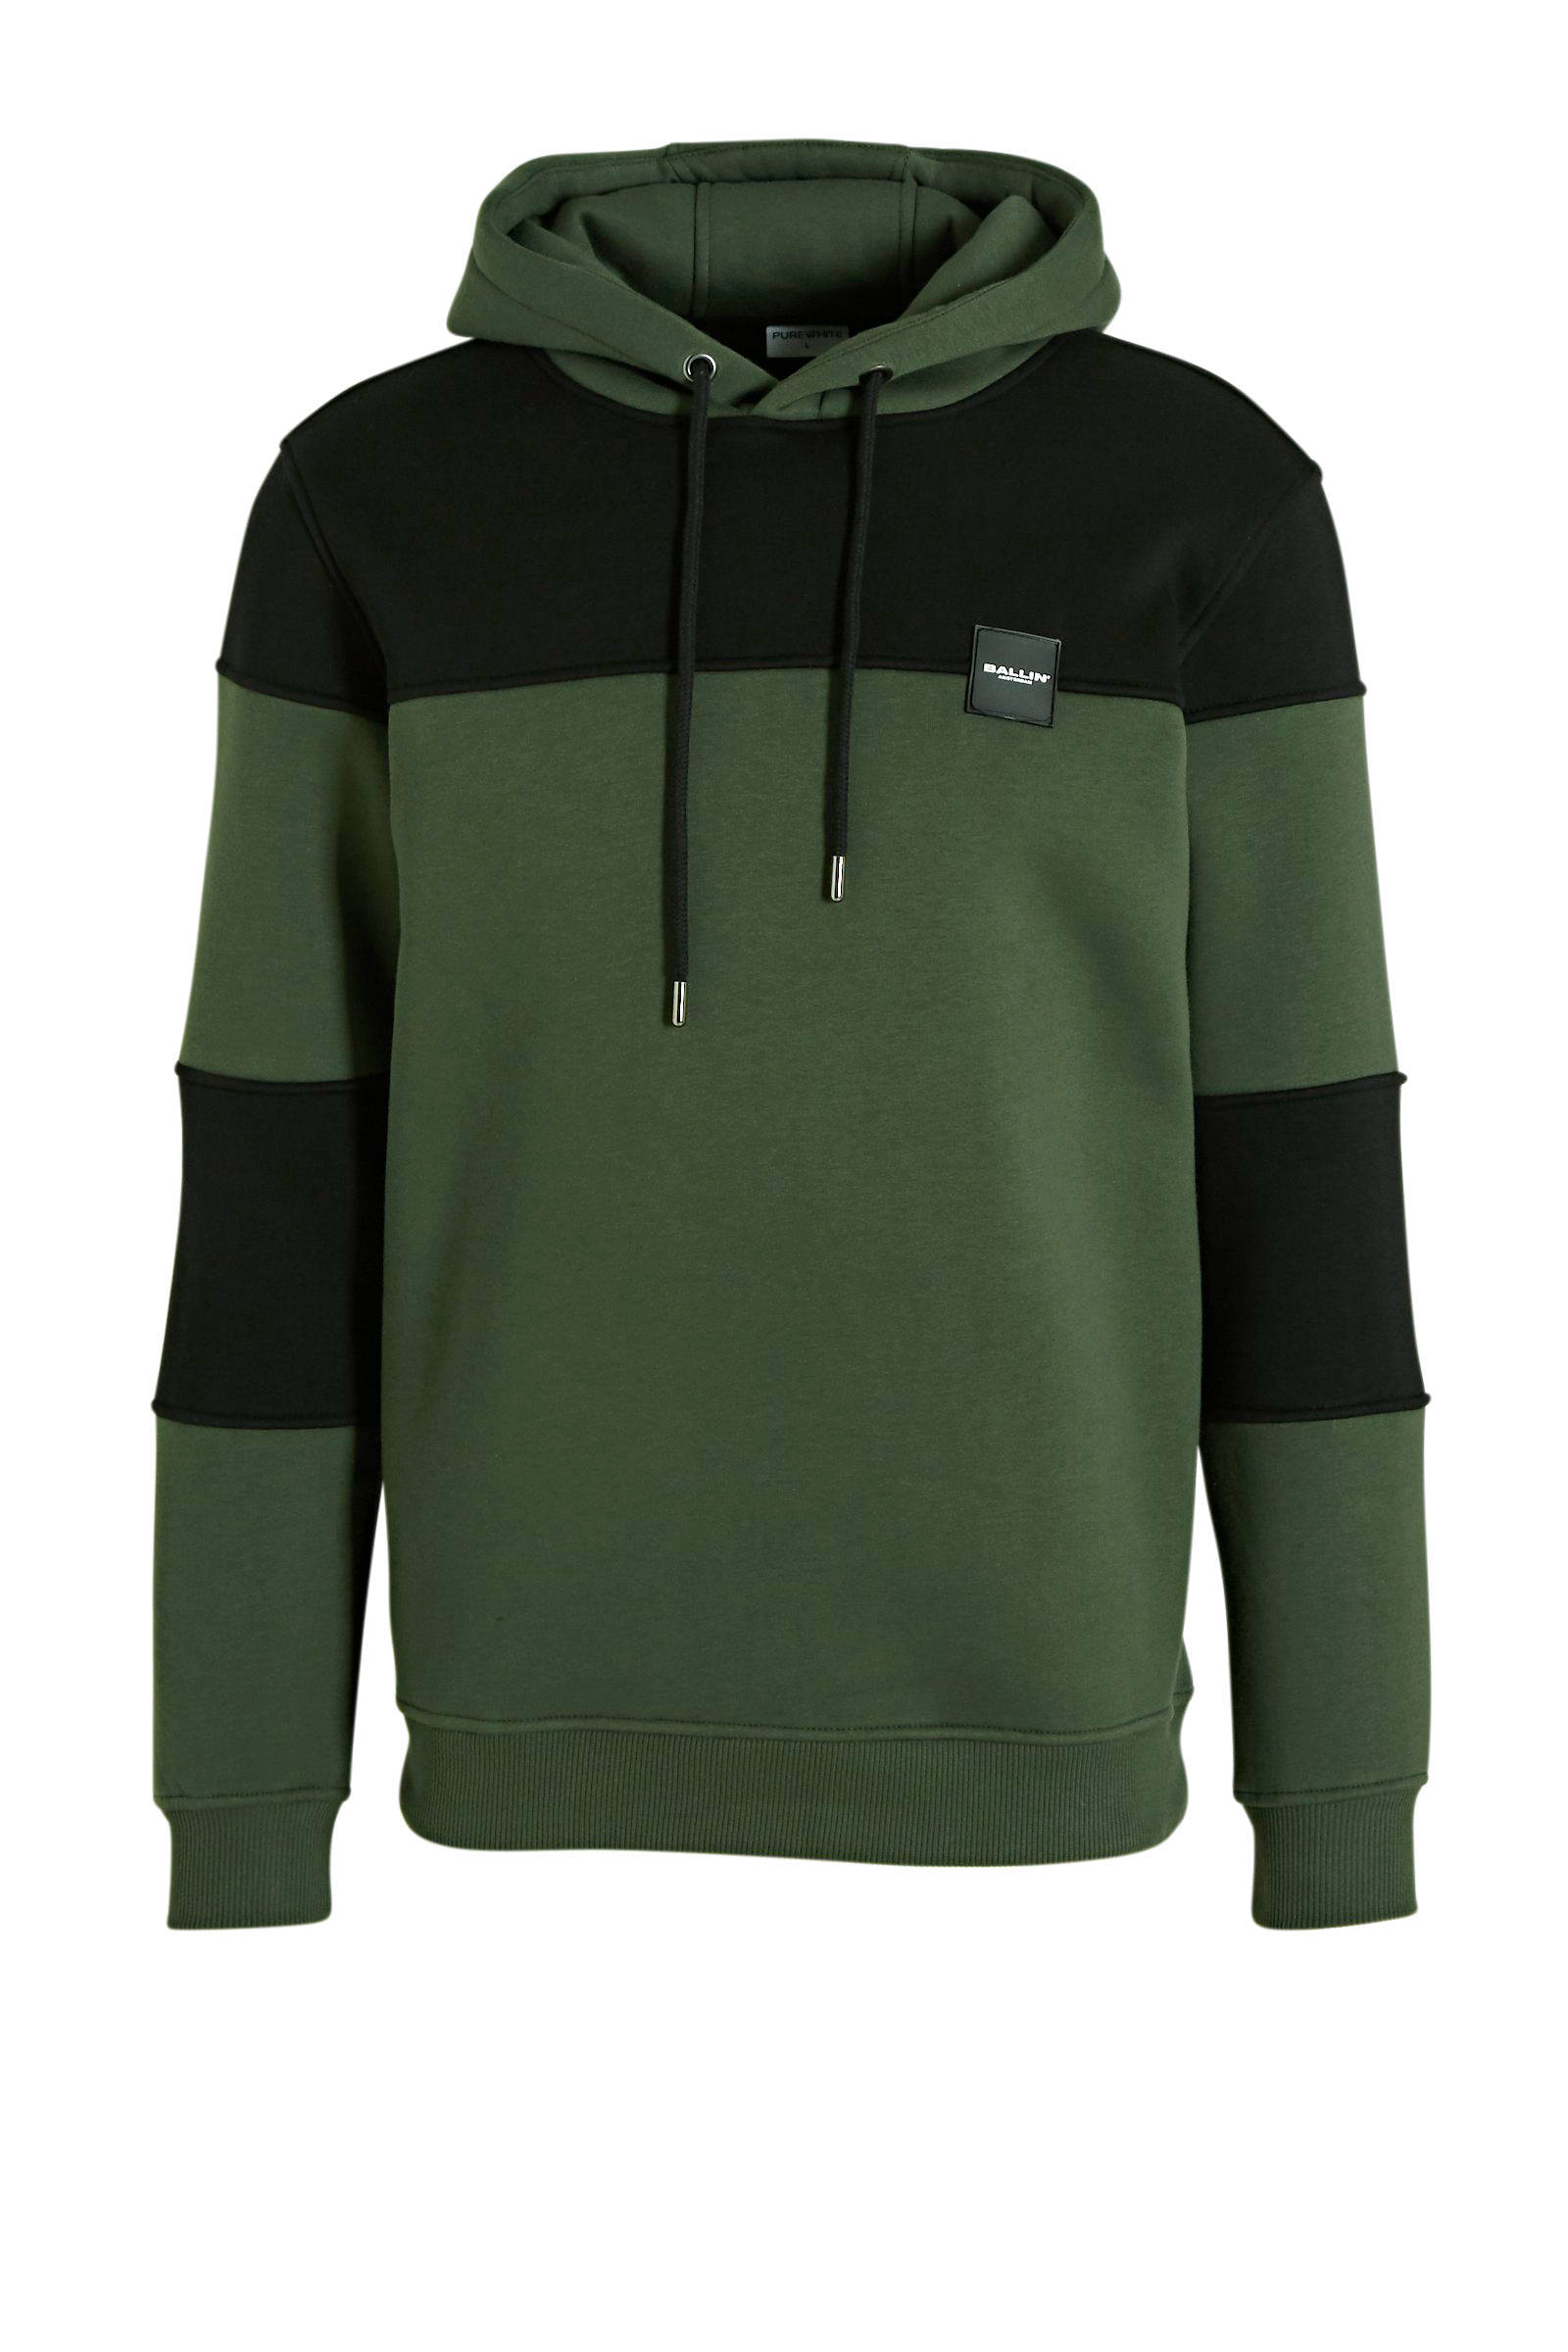 Purewhite Ballin hoodie groen/zwart online kopen